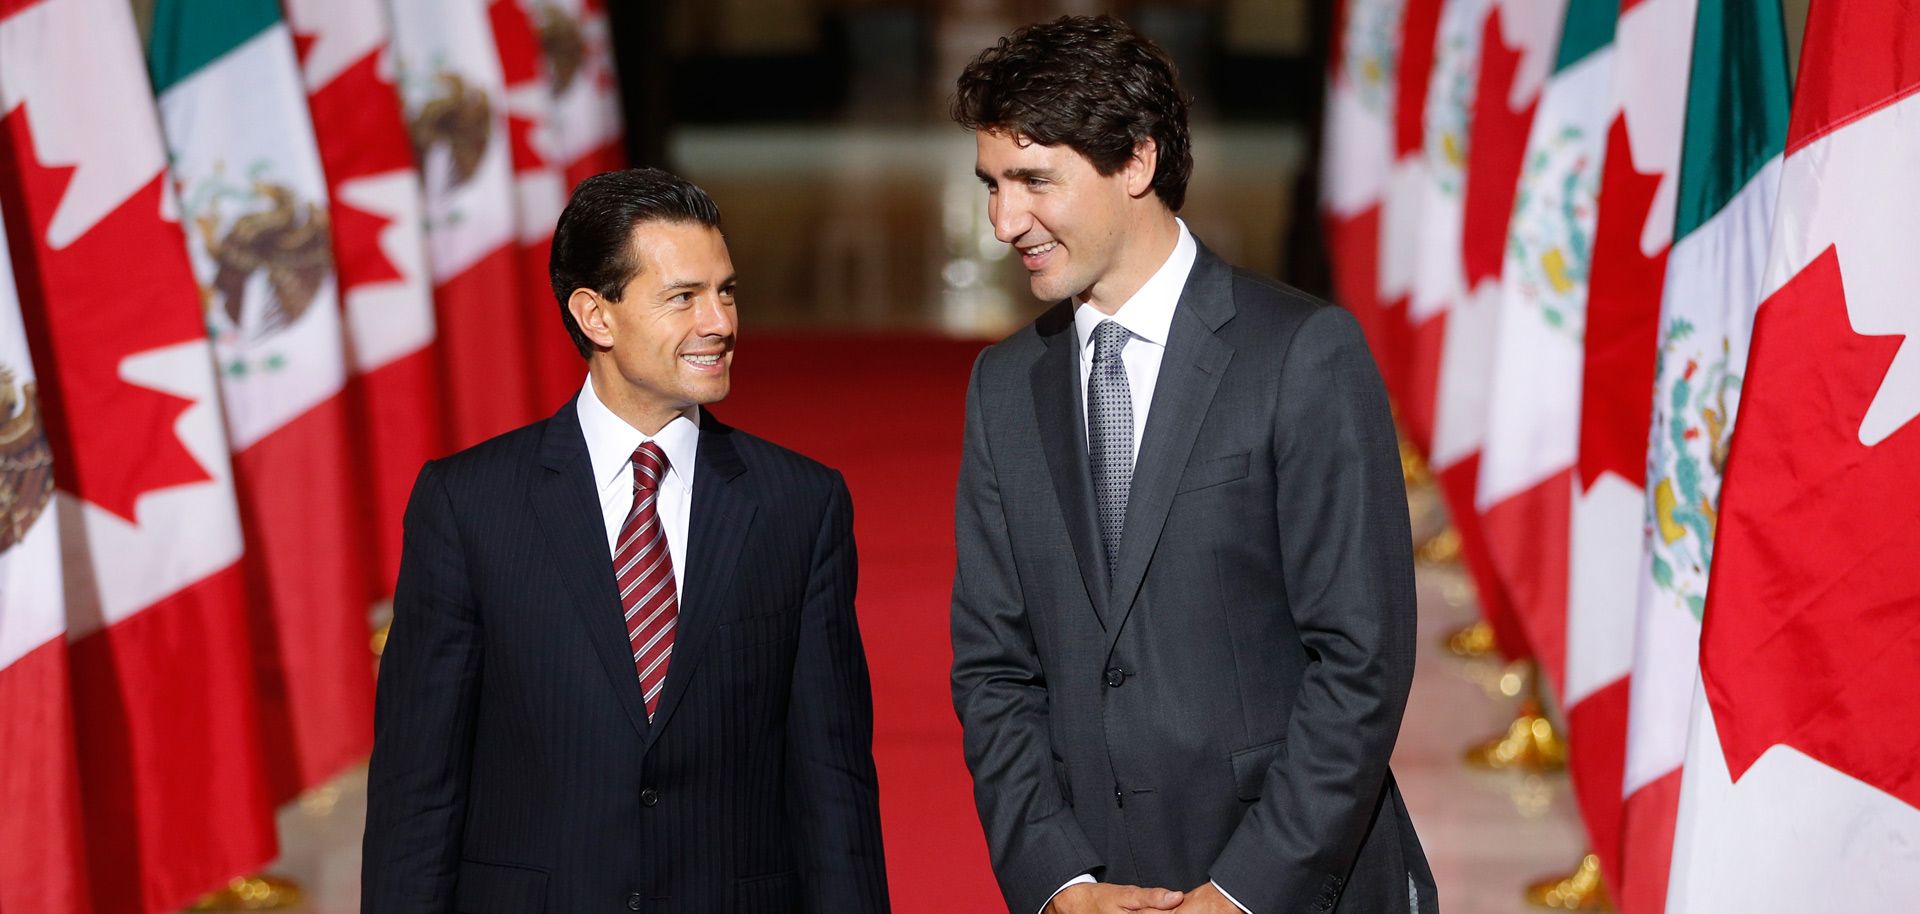 NAFTA's Future: The Three Amigos Will Dance Alone